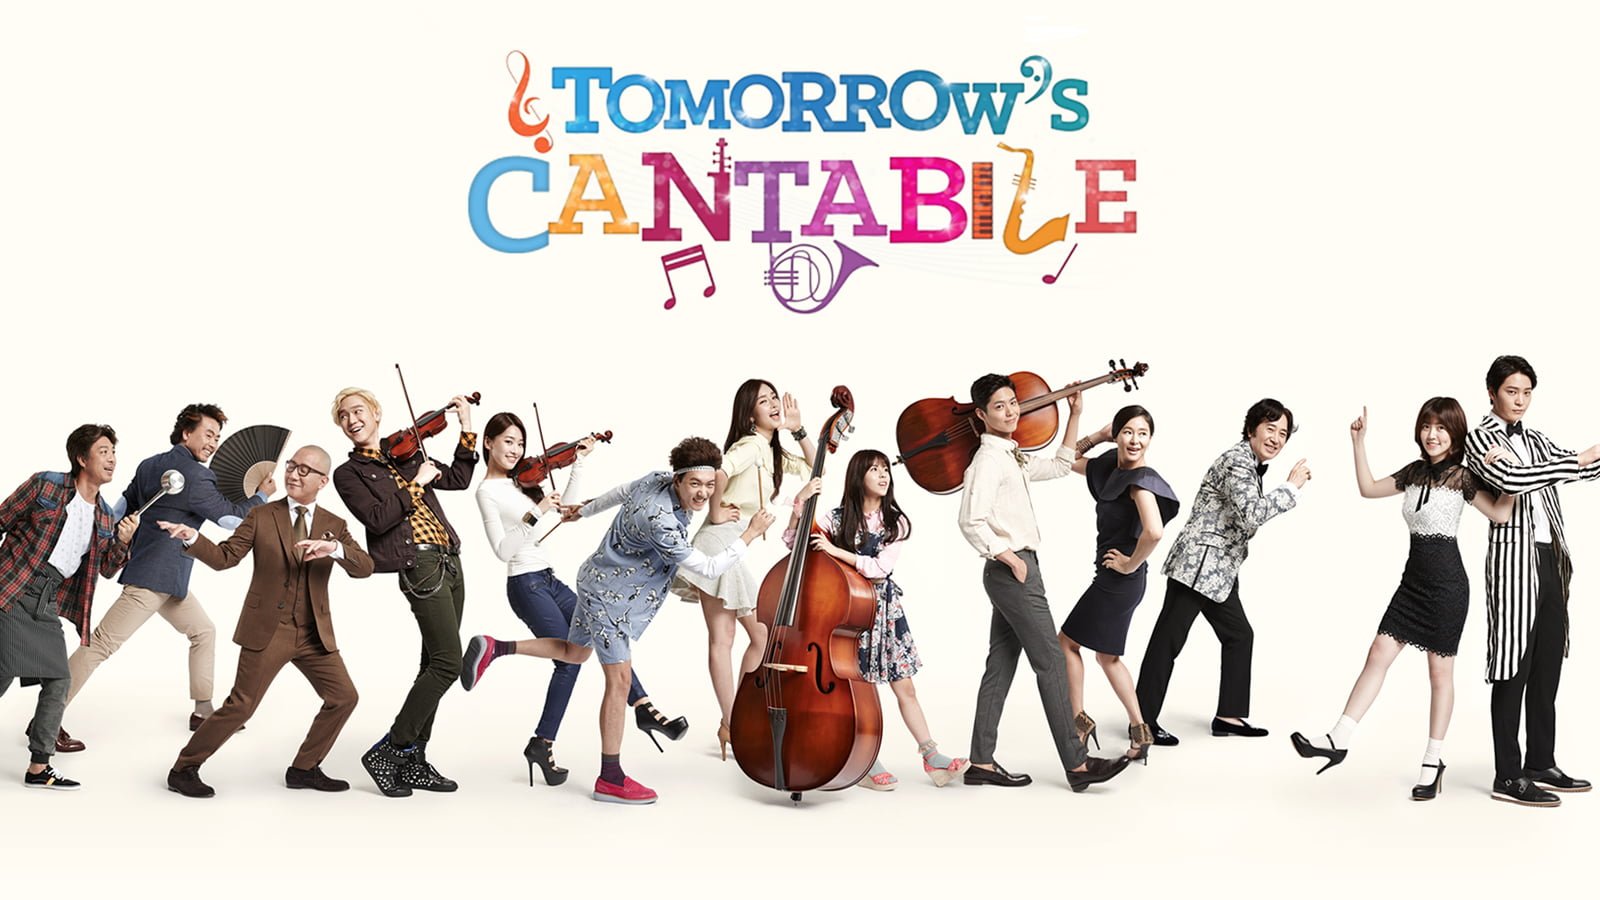 Tomorrow's Cantabile